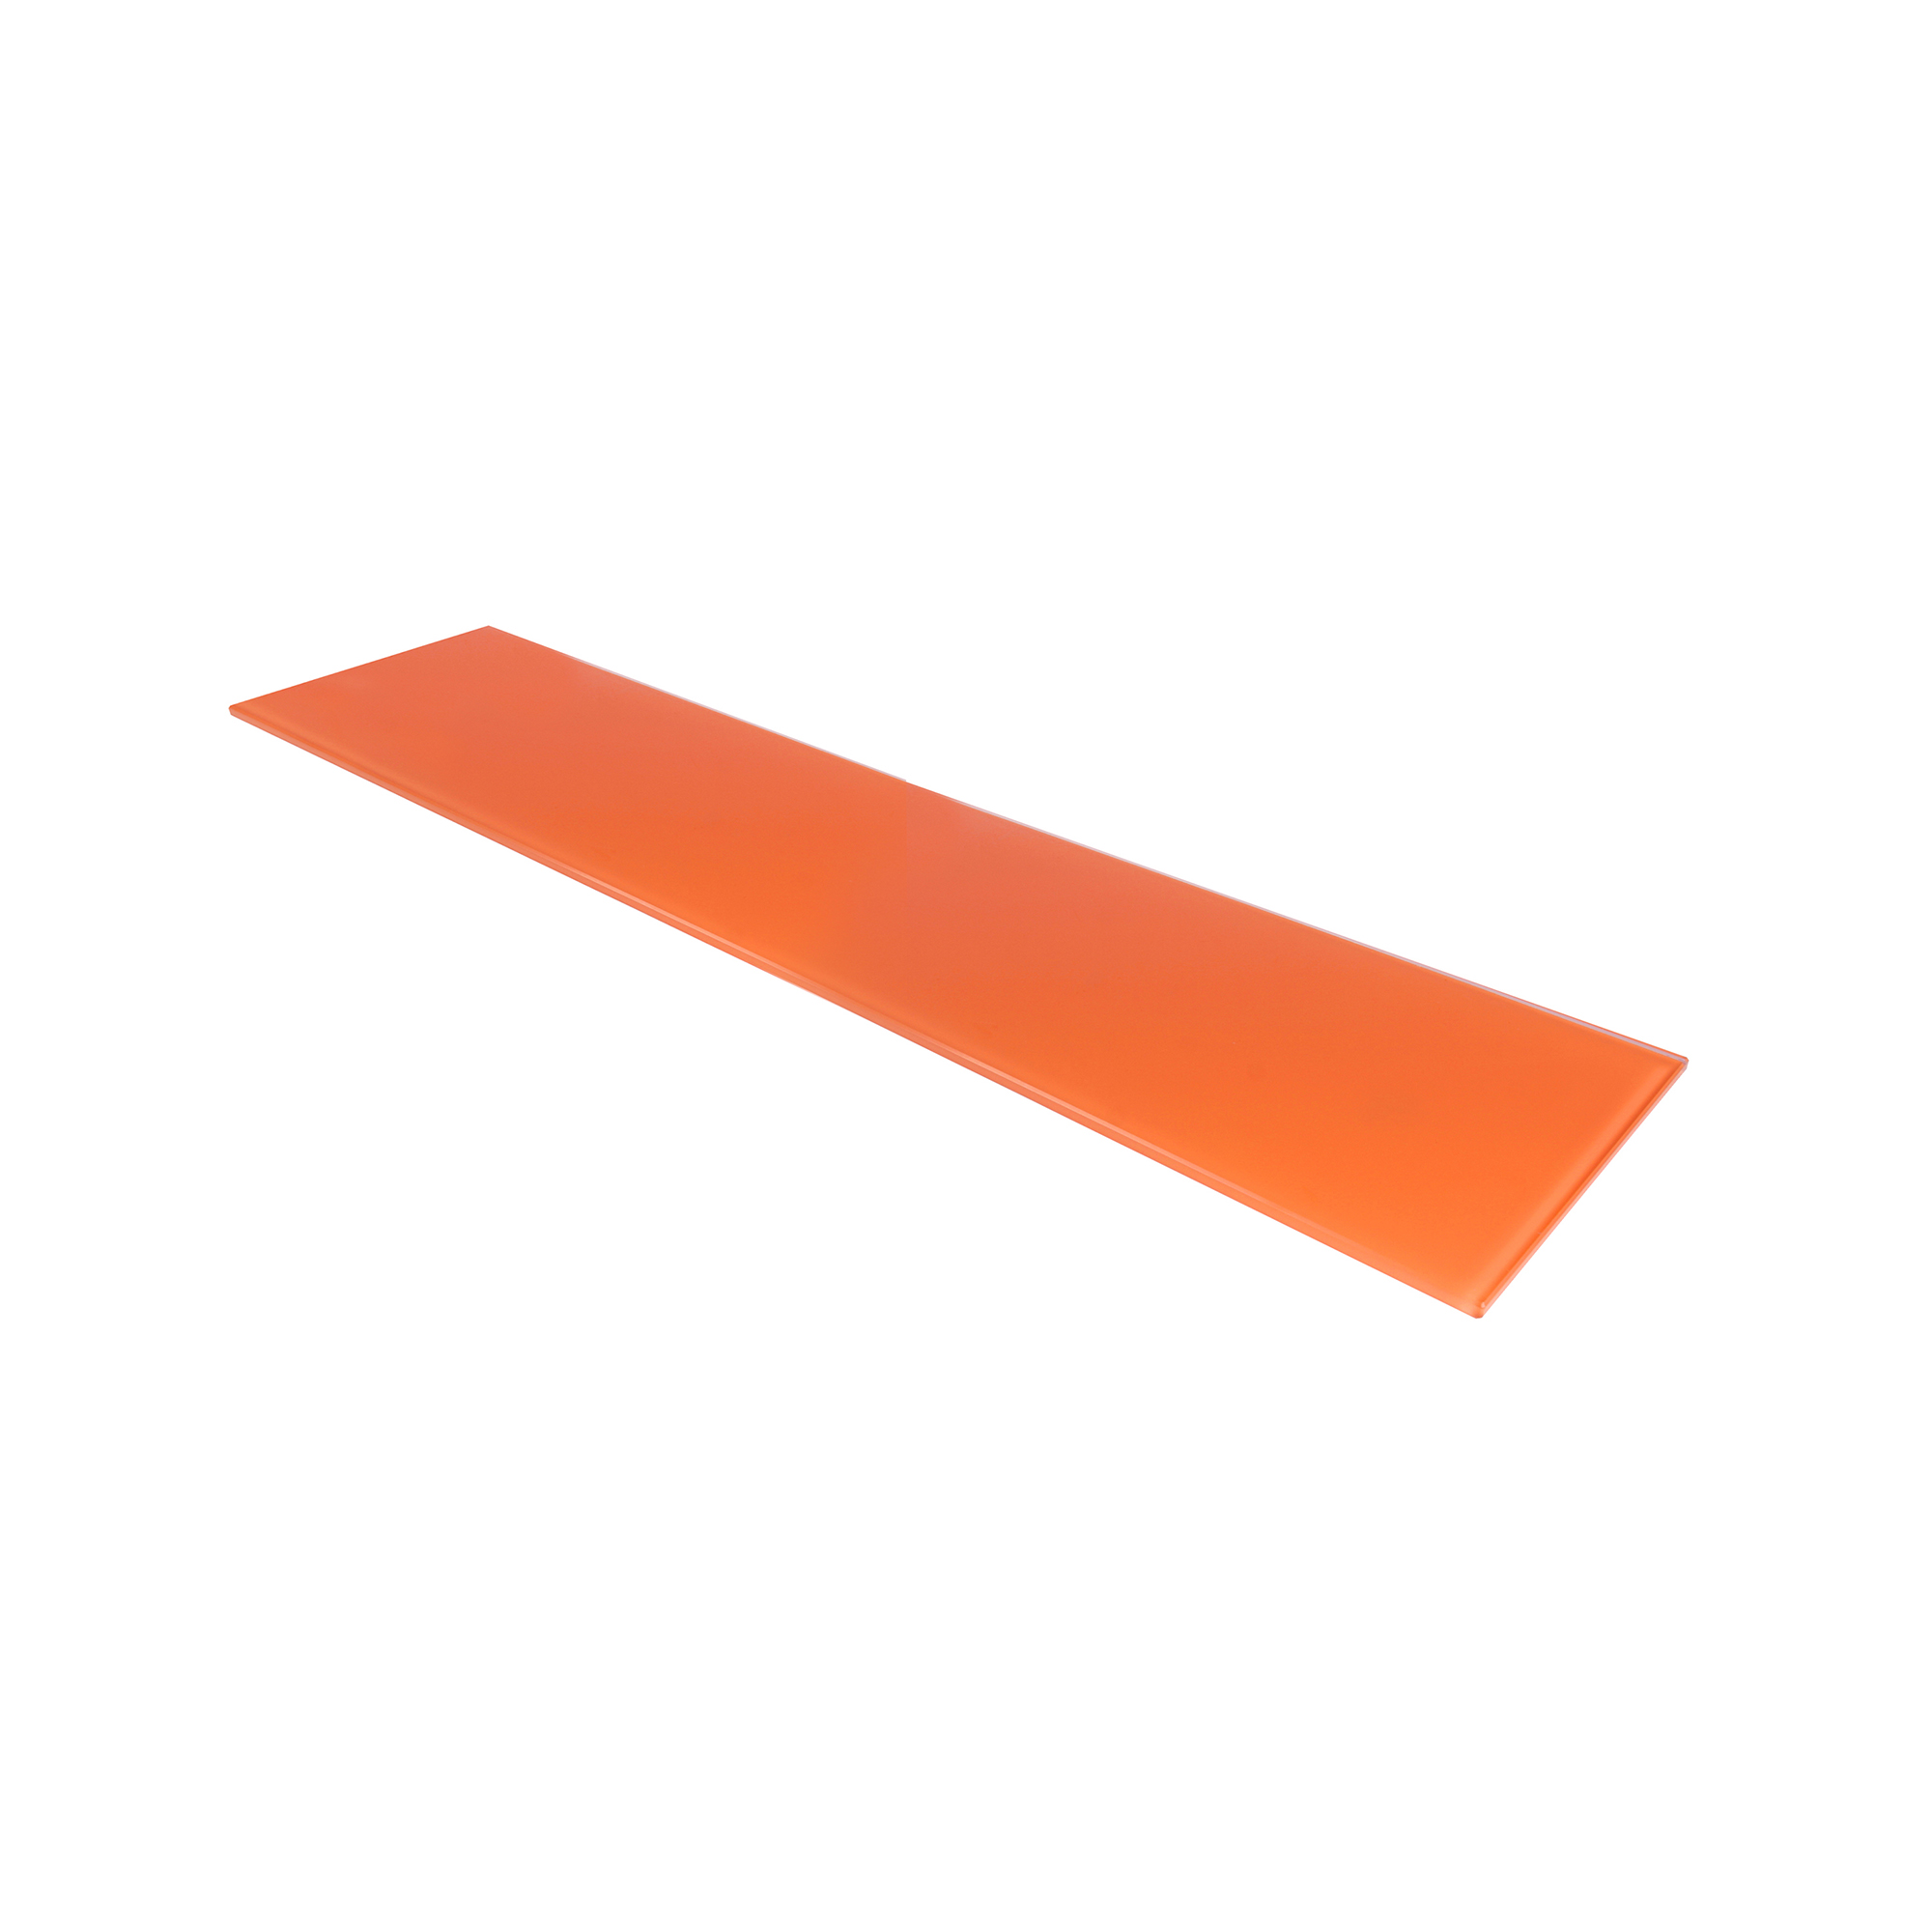 Estante de Cristal Rectangular Acabado en Naranja | Medidas 600*6*150 mm | Espesor de la Balda: 6 mm | 1 Unidad